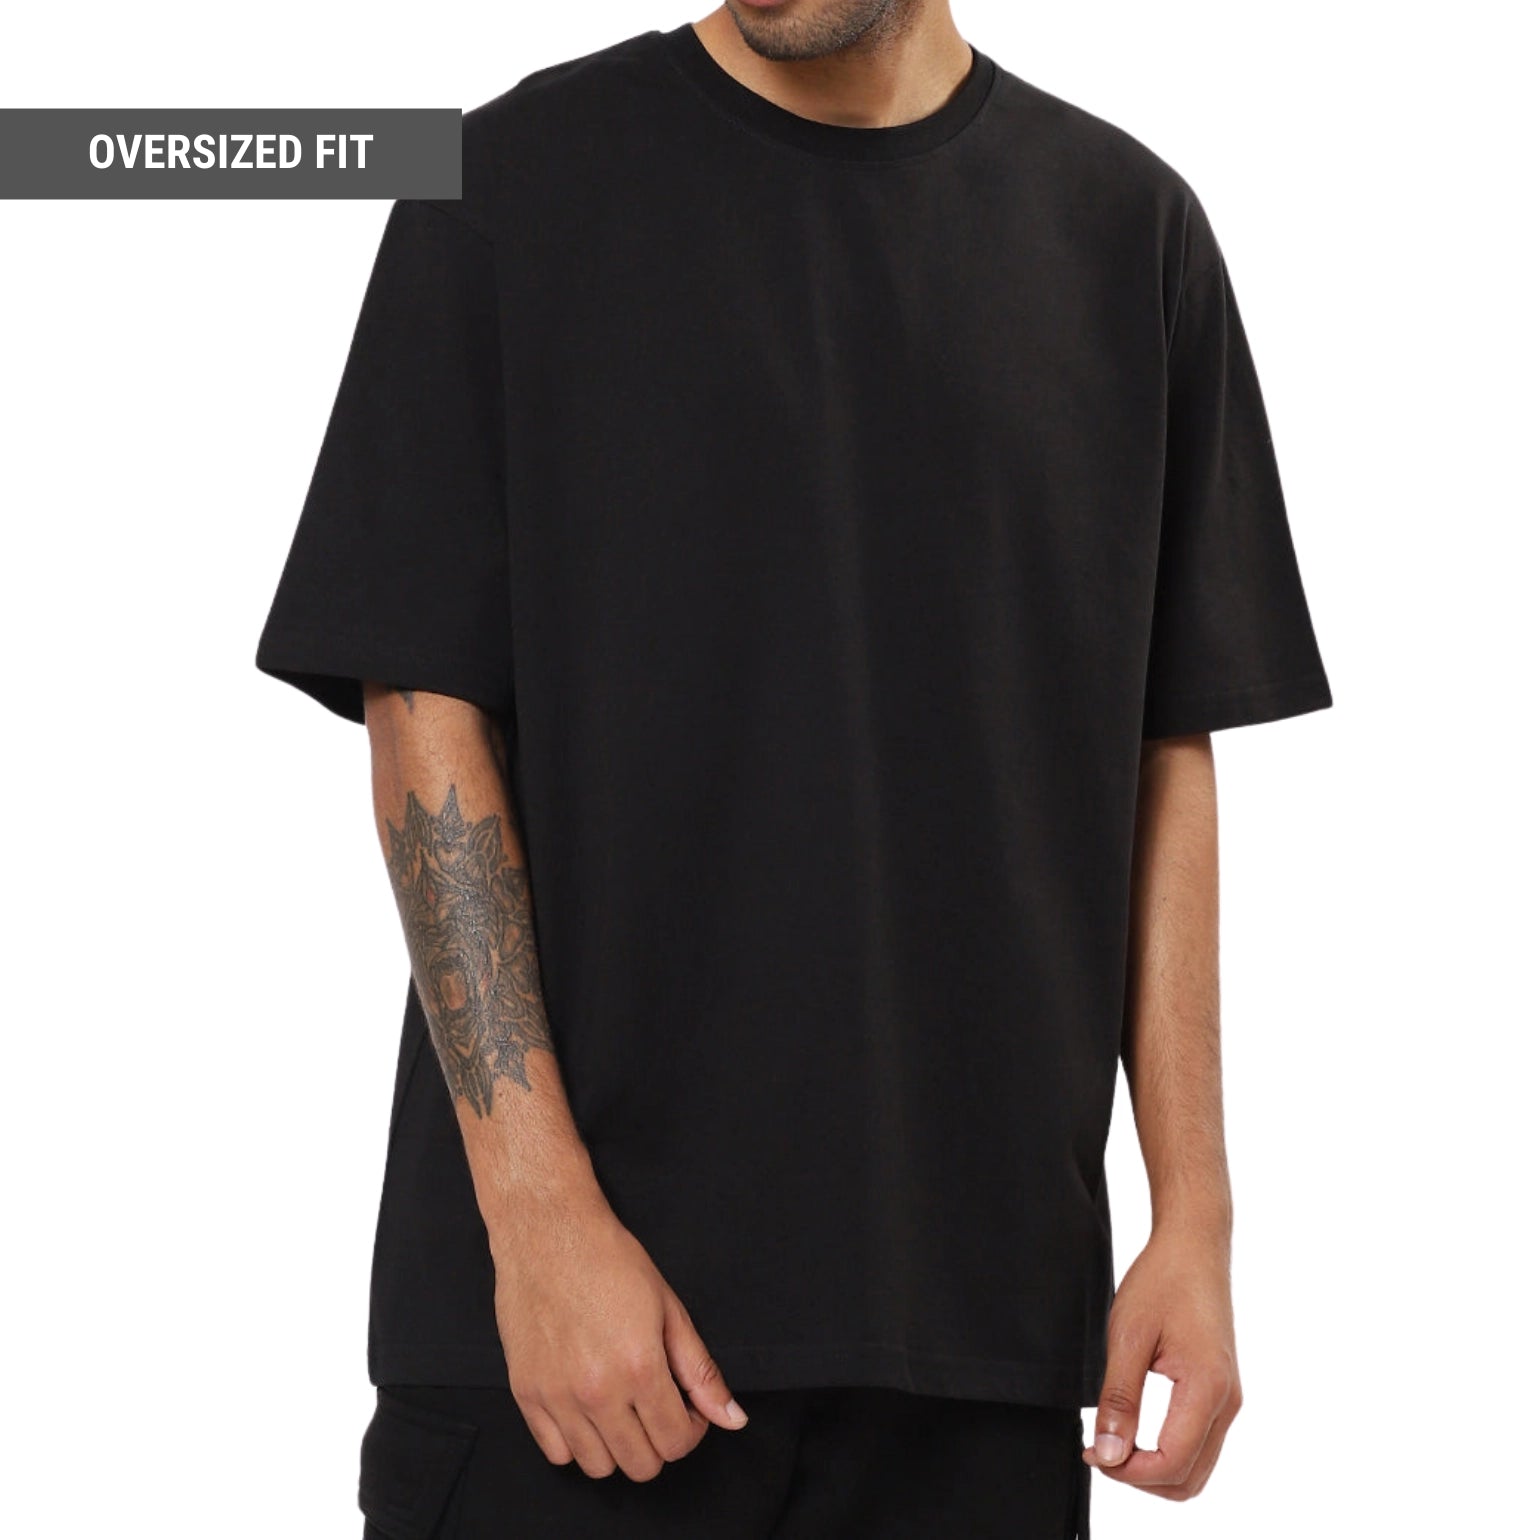 Pack of 3 Oversized T-shirt in Black, White, Lavender - SleekandPeek